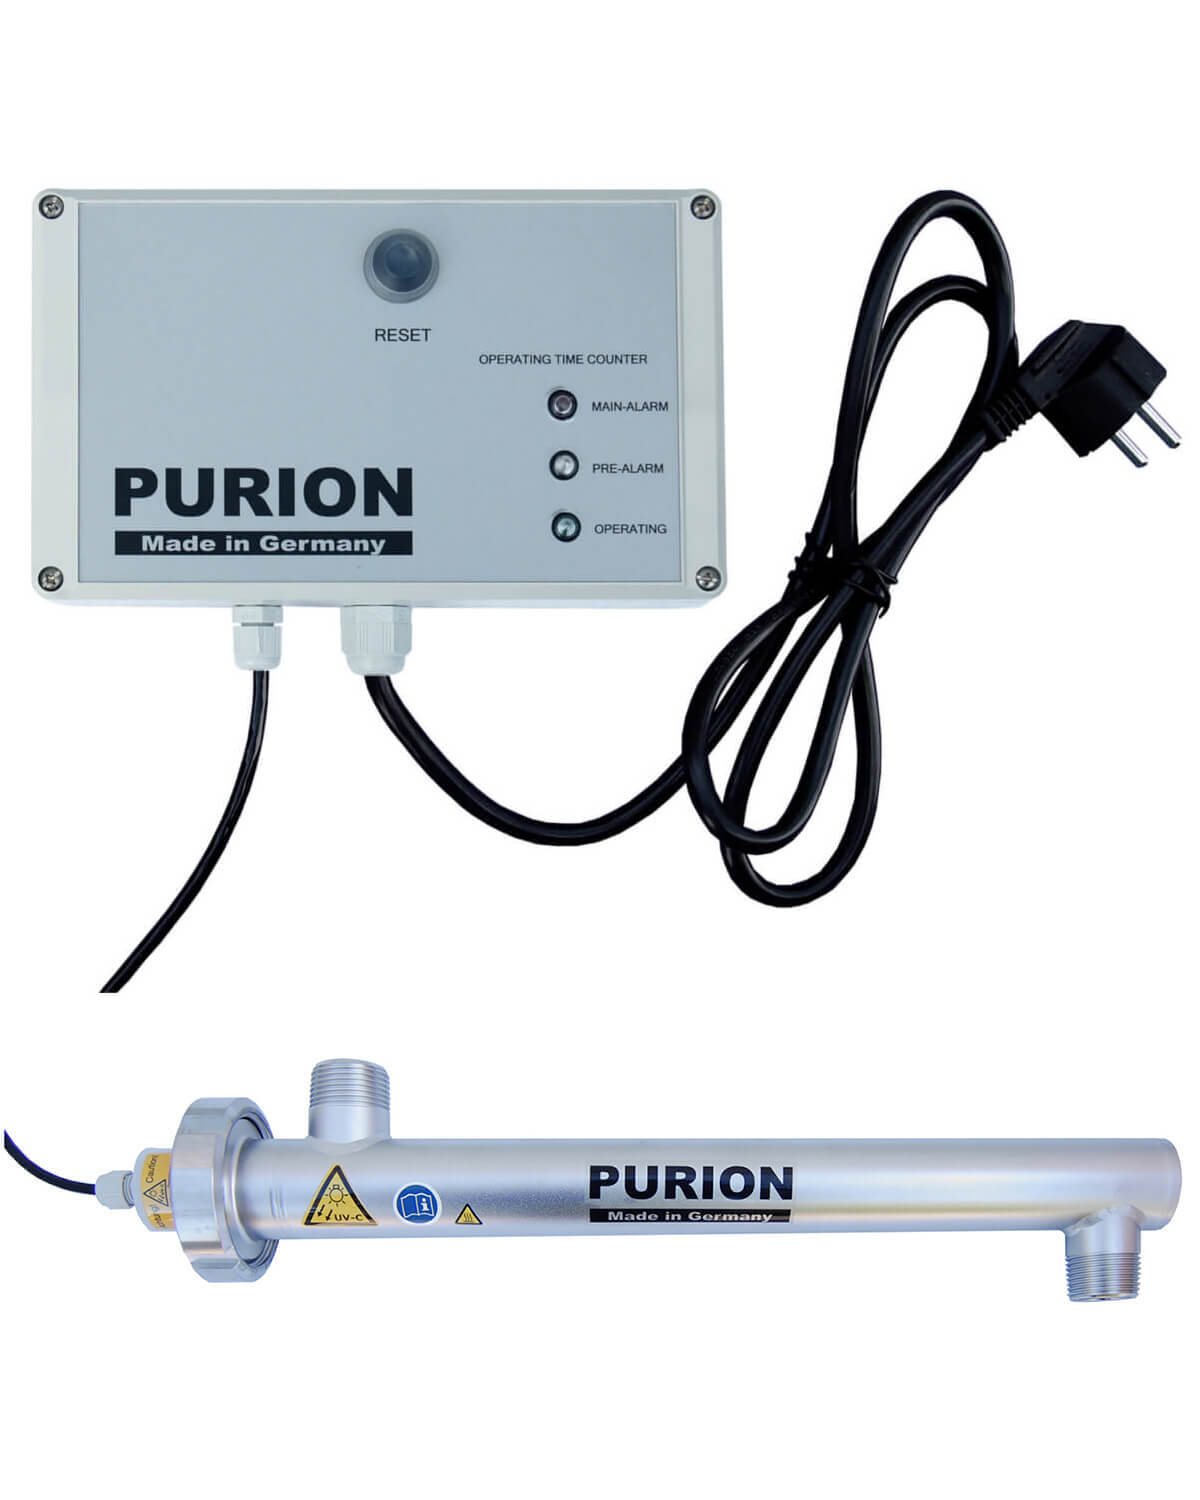 Implementieren Sie SEO-Keywords wie Trinkwasser und Desinfektion, um den Inhalt für Suchmaschinen zu optimieren und gleichzeitig die Wirksamkeit von PURION 1000 110 - 240 V AC OTC der PURION GmbH hervorzuheben.